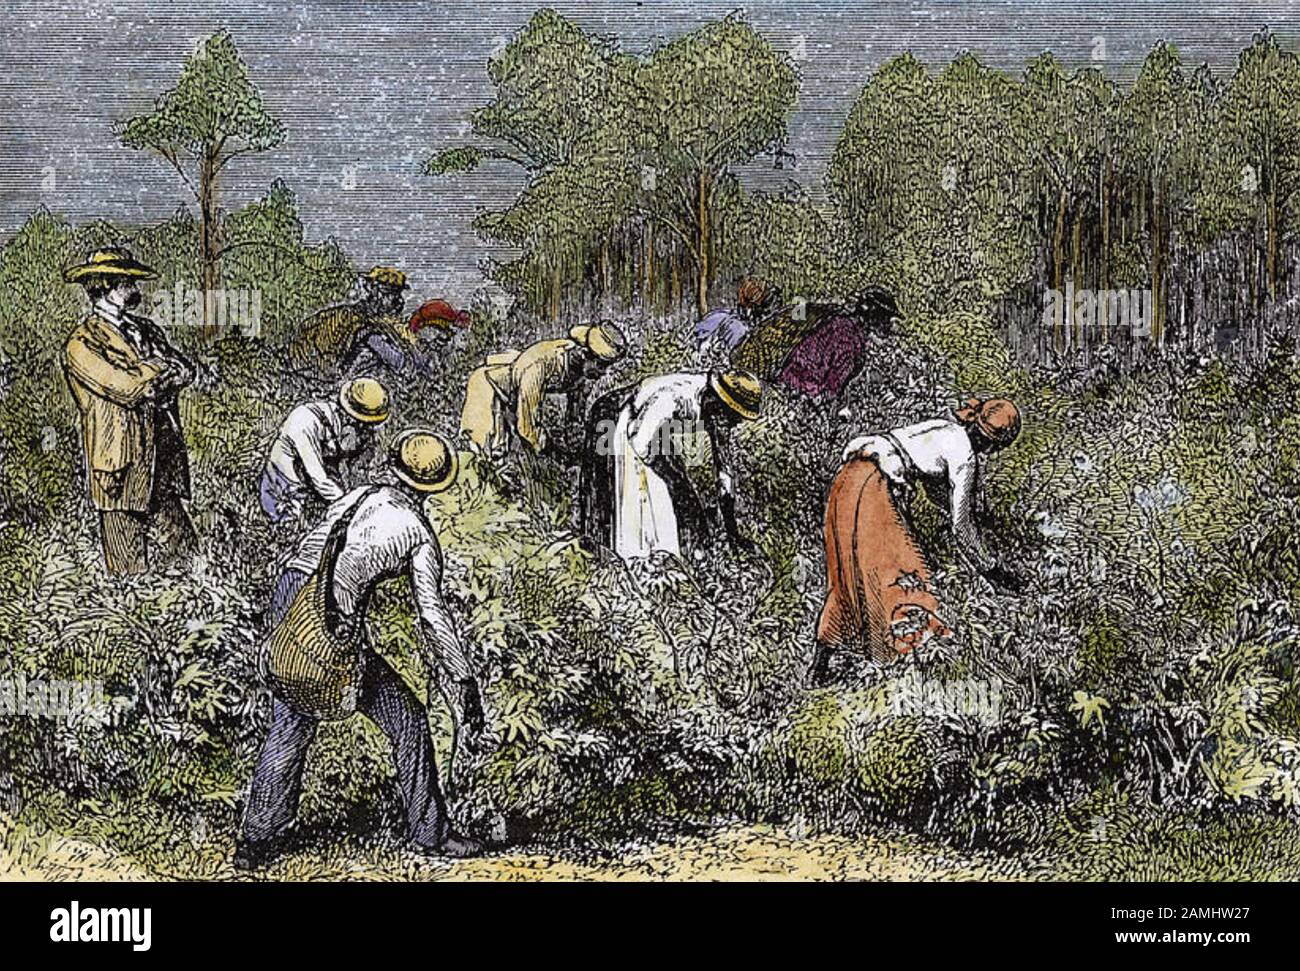 RECOLECCIÓN de algodón en el sur americano mediados de 1800 Foto de stock